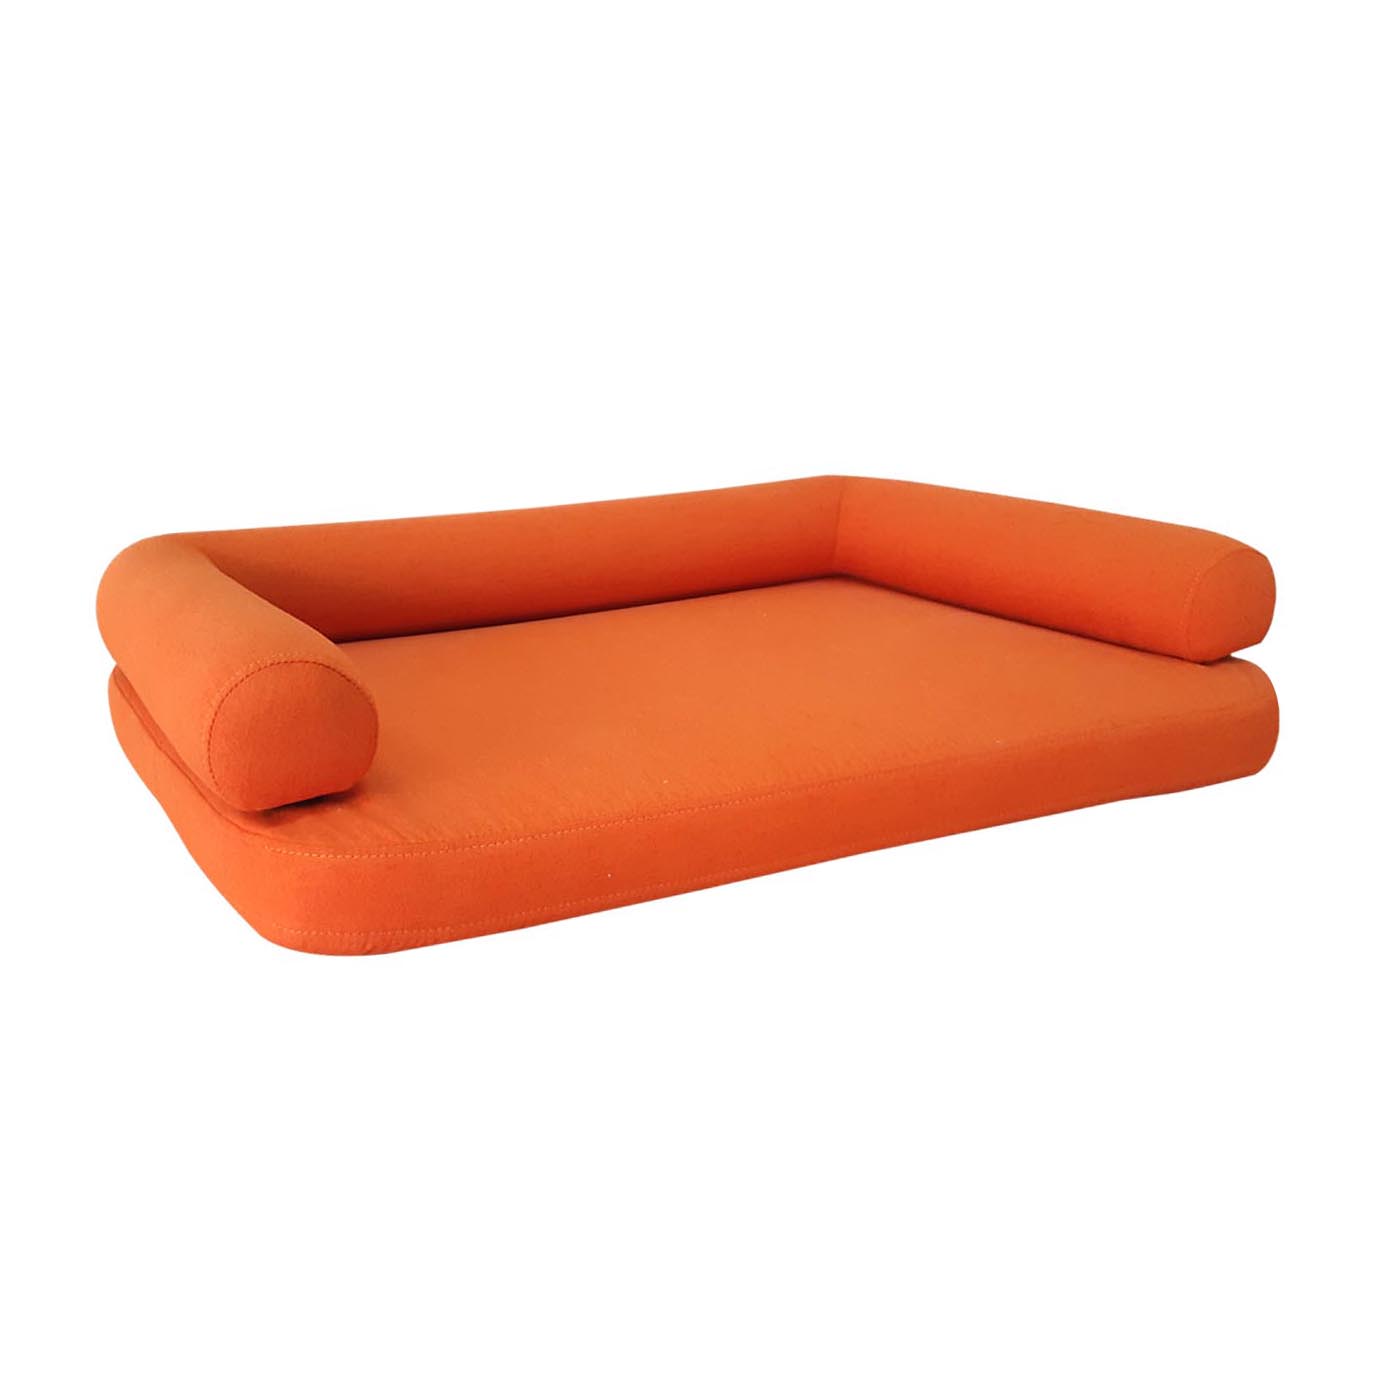 The Orange Pohovka Pet Bed